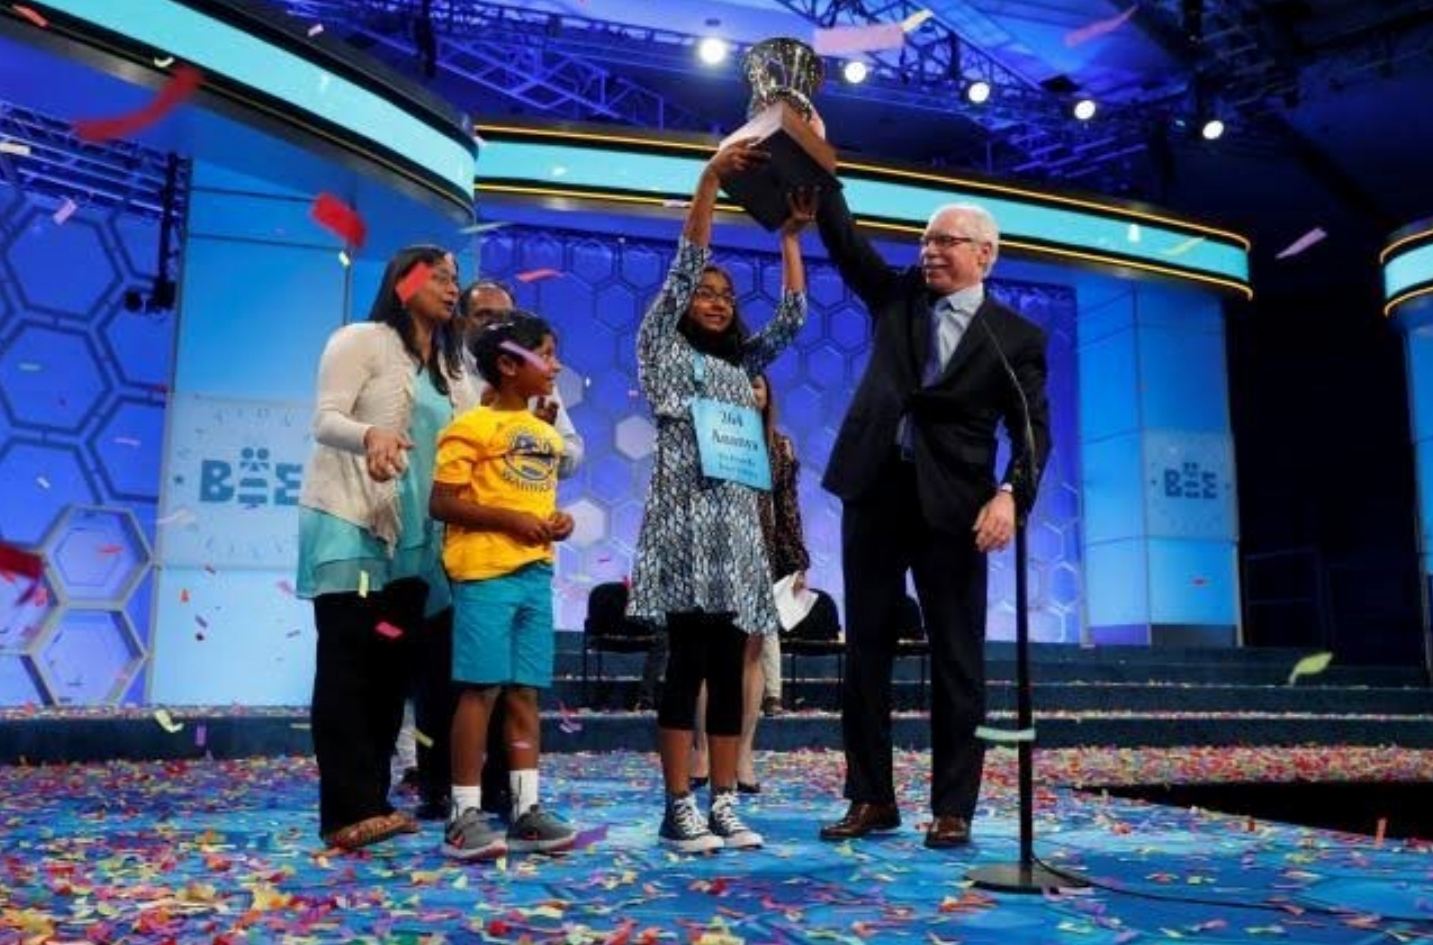 Spelling Bee Winner celebrating their victory